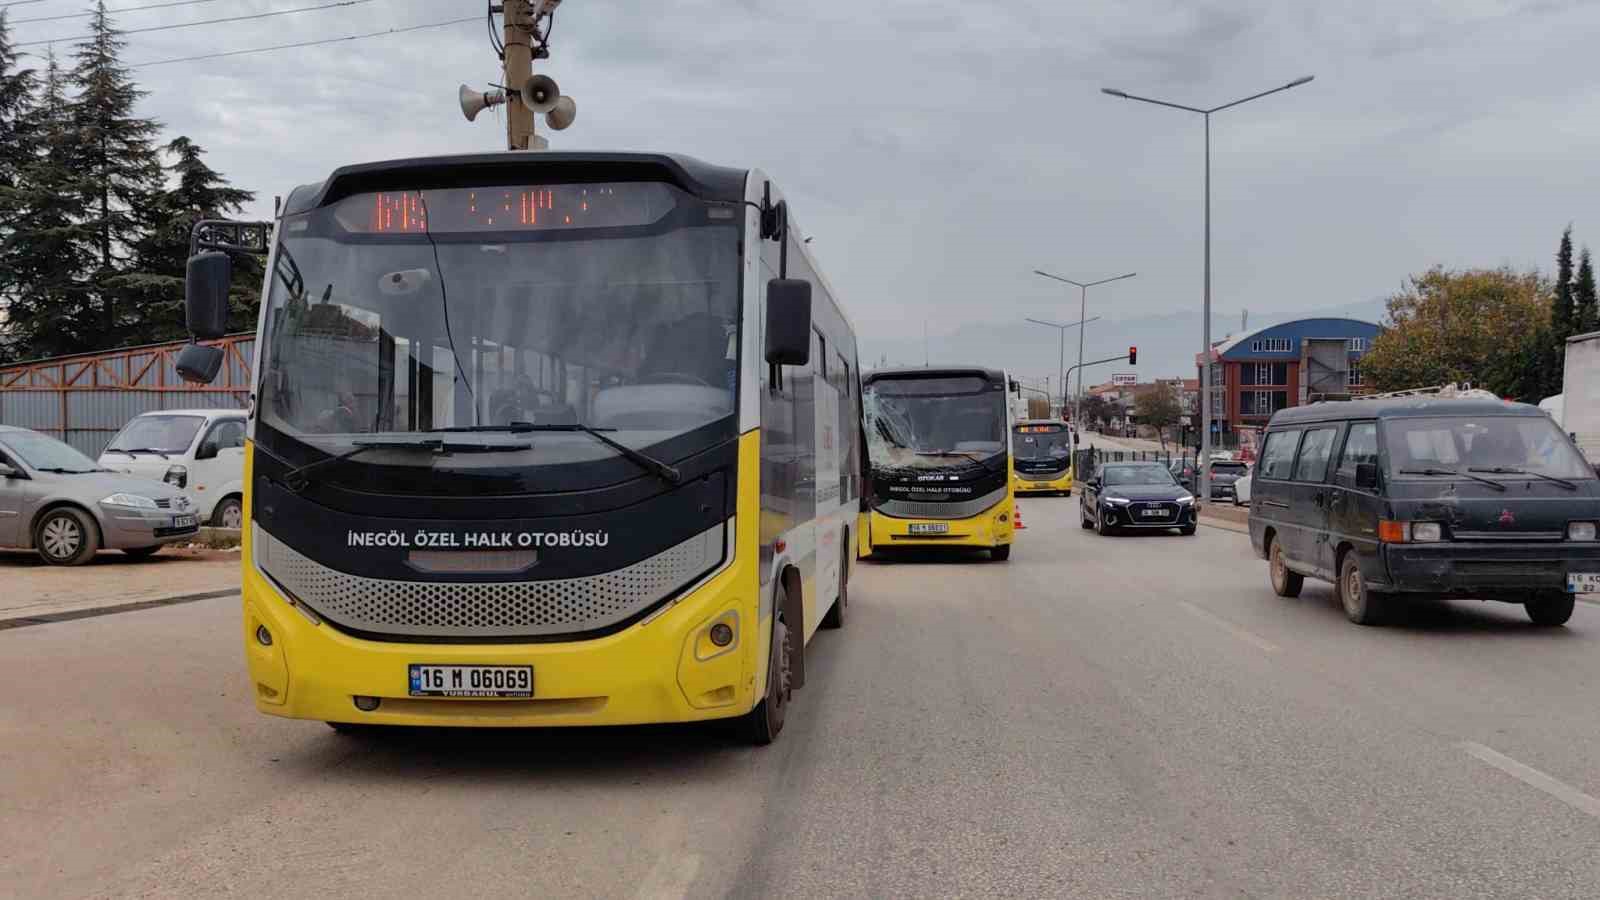 İnegöl’de özel halk otobüsleri çarpıştı: 3 yaralı